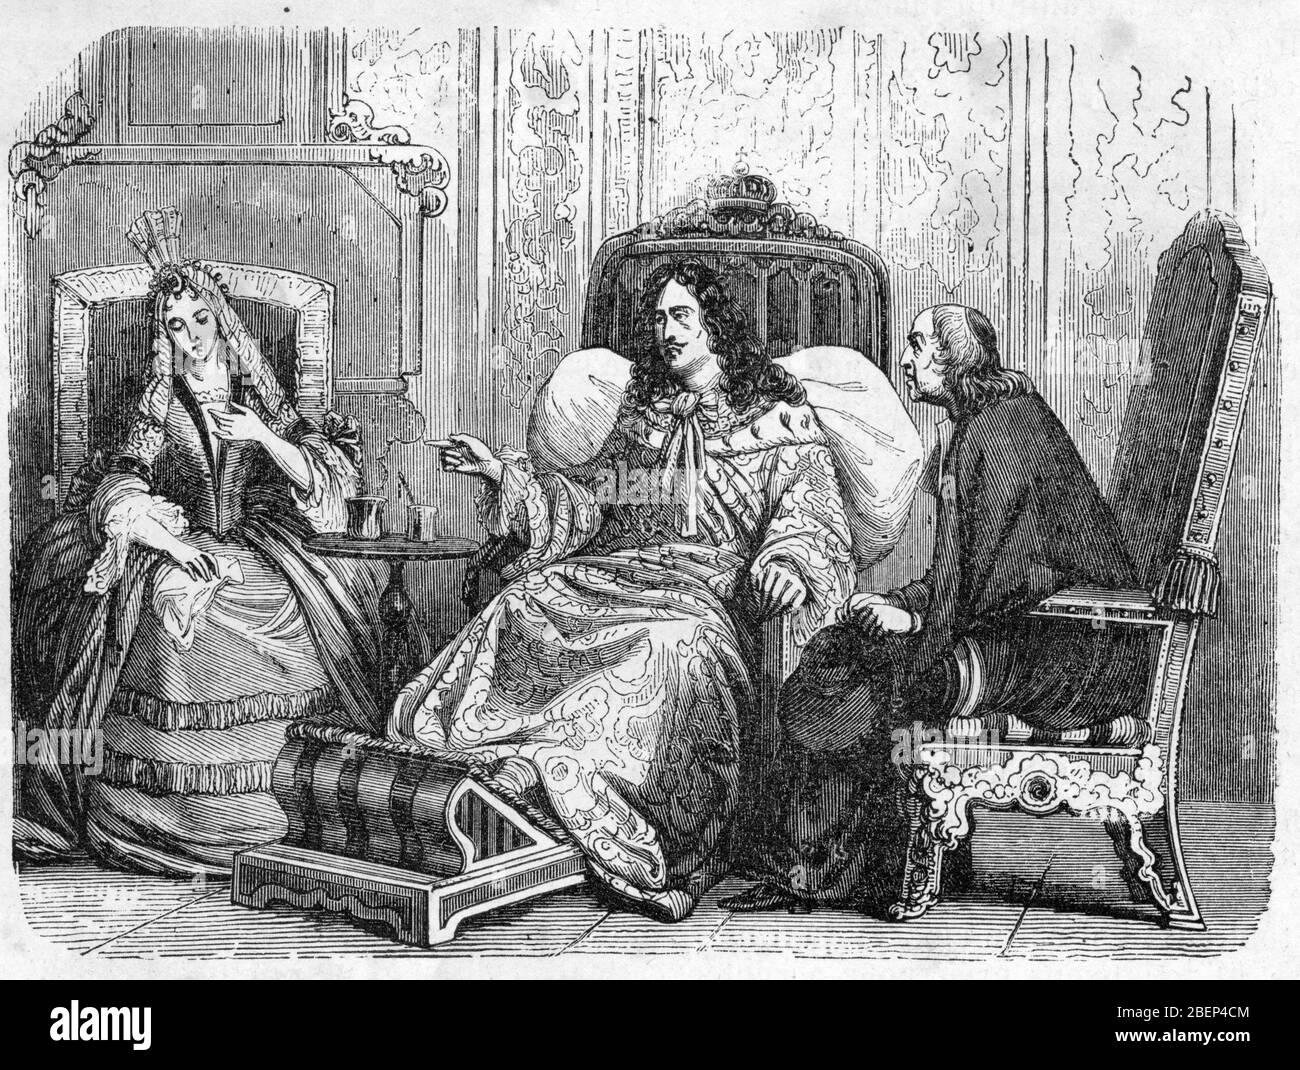 Le roi Louis XIV (1638-1715) demandant una madame de Maintenon d'eleigner hijo ancienne favorito Madame de Montespan tombee en desgracia suite a l'affaire Foto de stock